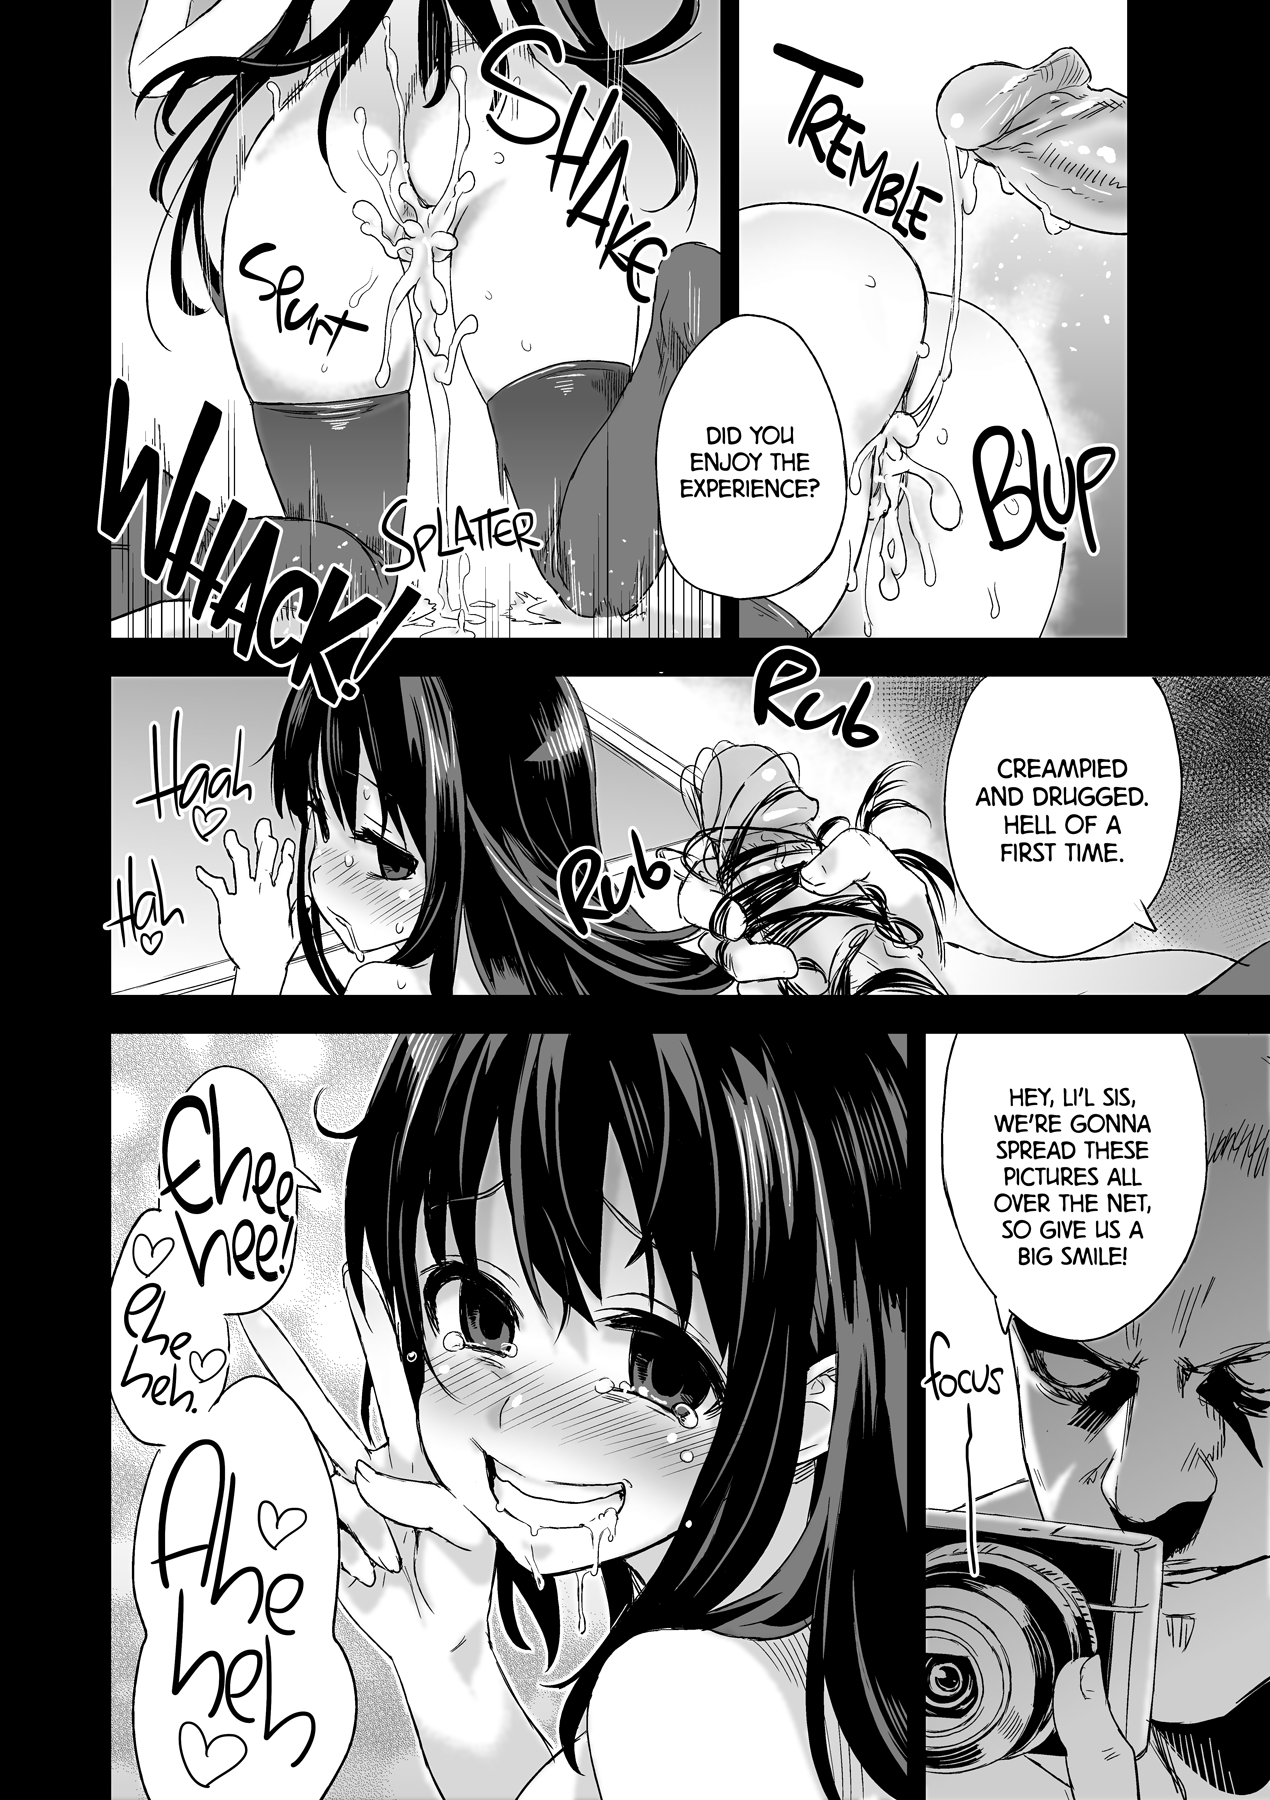 Victim Girls 13 - DRAGON SLAYER hentai manga picture 35